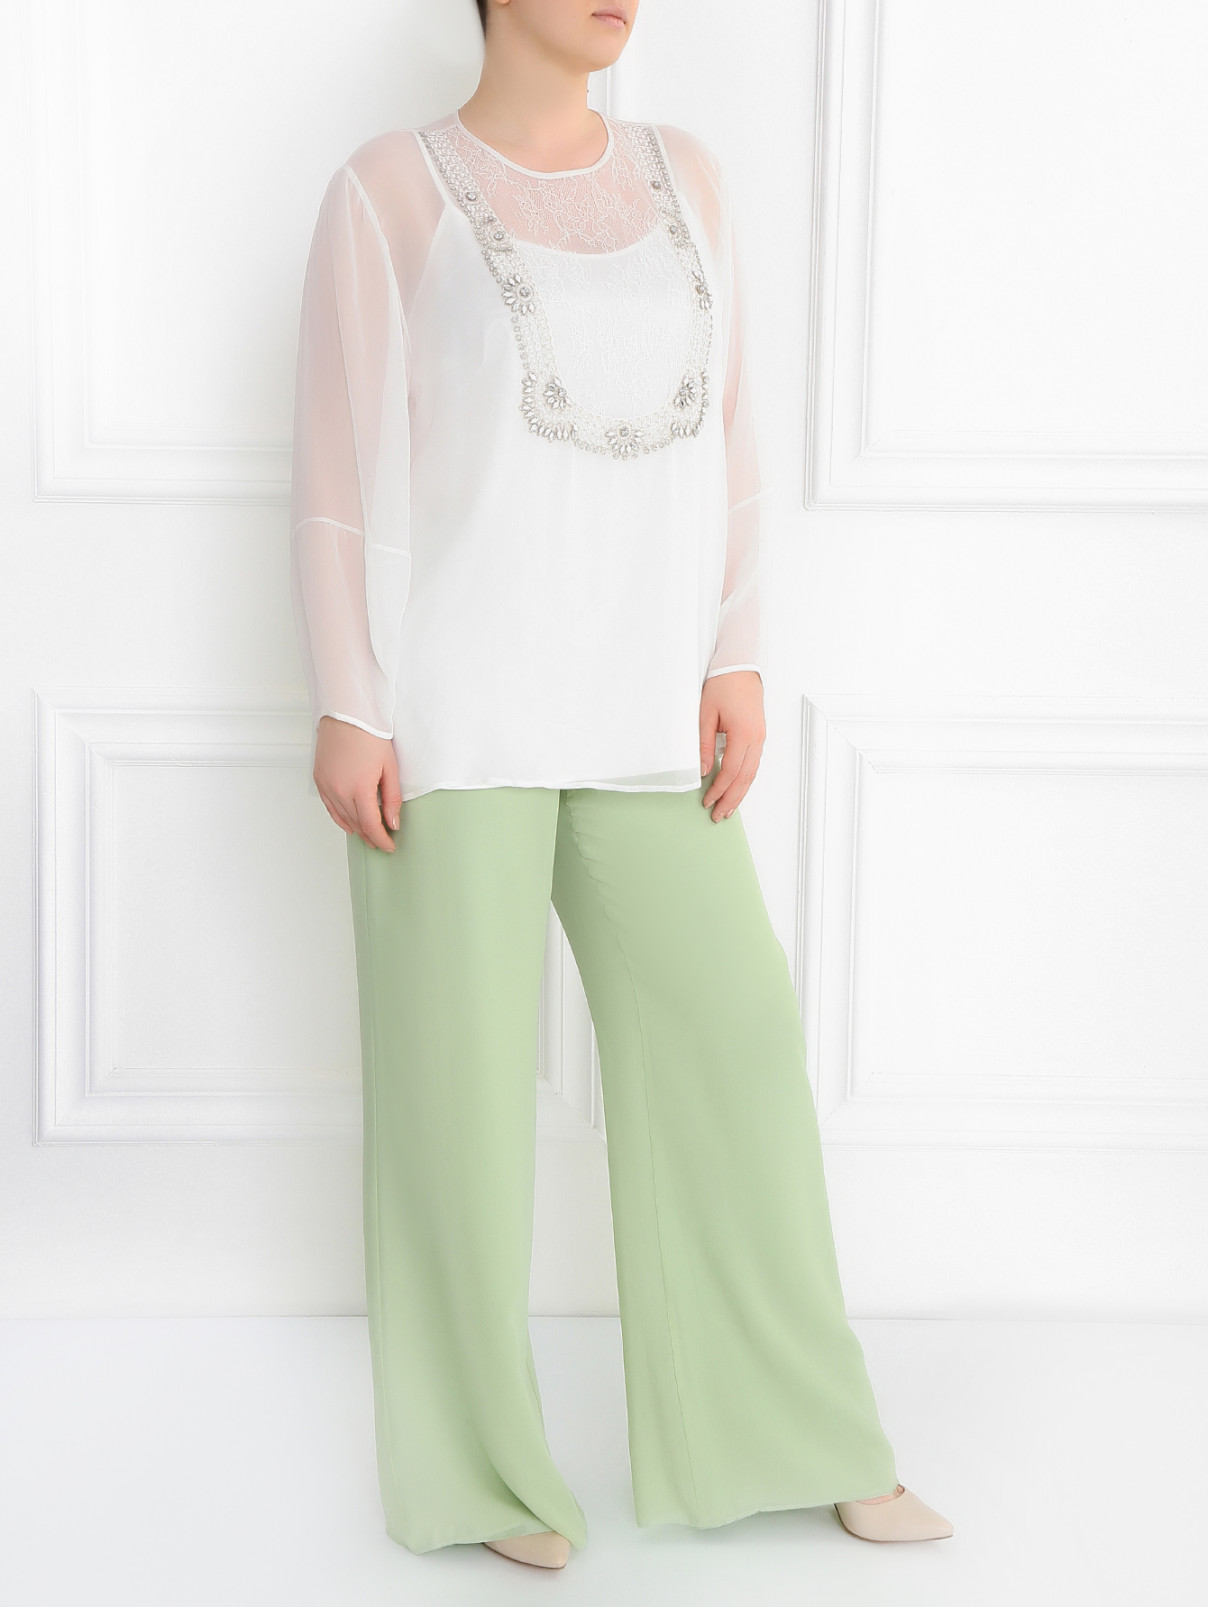 Блуза декорированная стразами и кружевом Marina Rinaldi  –  Модель Общий вид  – Цвет:  Белый